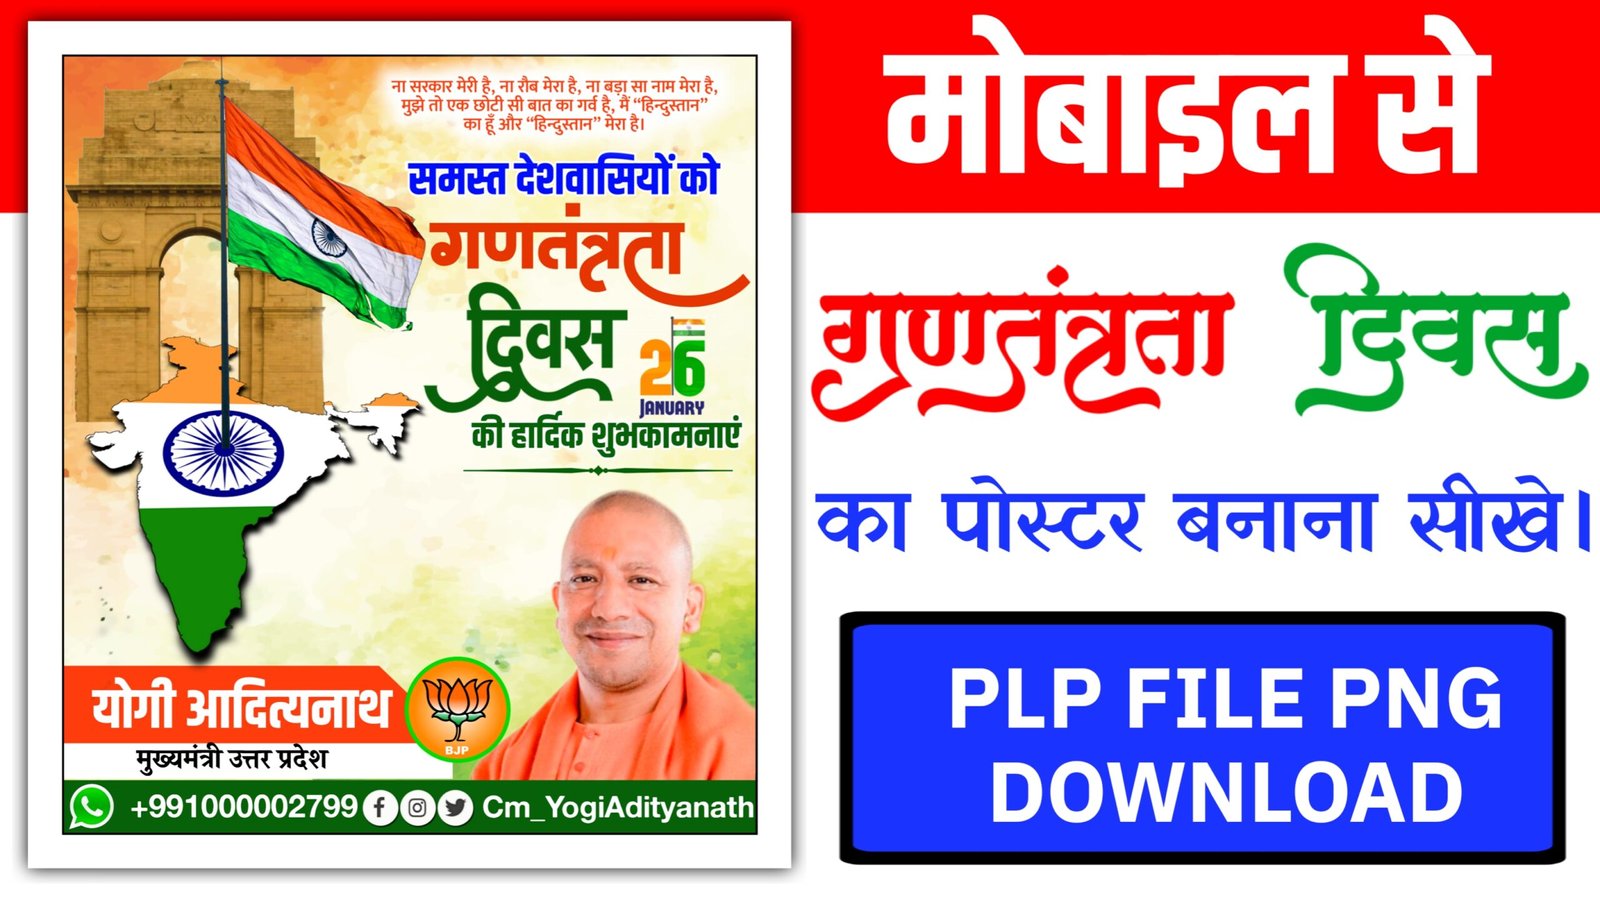 Gantantra diwas poster kaise banaye| गणतंत्र दिवस के पोस्टर एक साथ कैसे बनाएं|